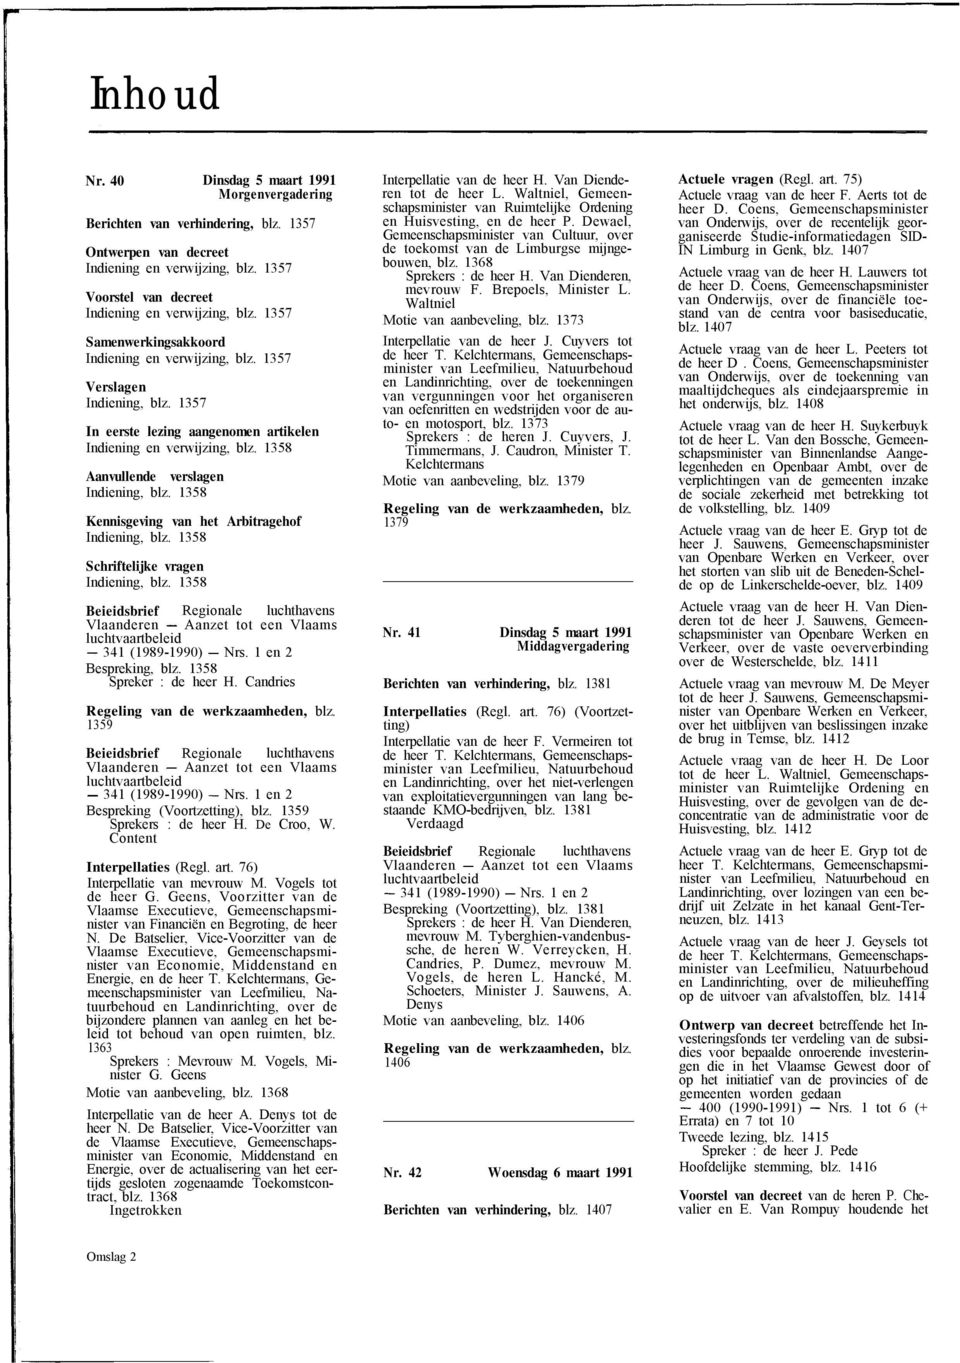 1358 Aanvullende verslagen Indiening, blz. 1358 Kennisgeving van het Arbitragehof Indiening, blz. 1358 Schriftelijke vragen Indiening, blz.